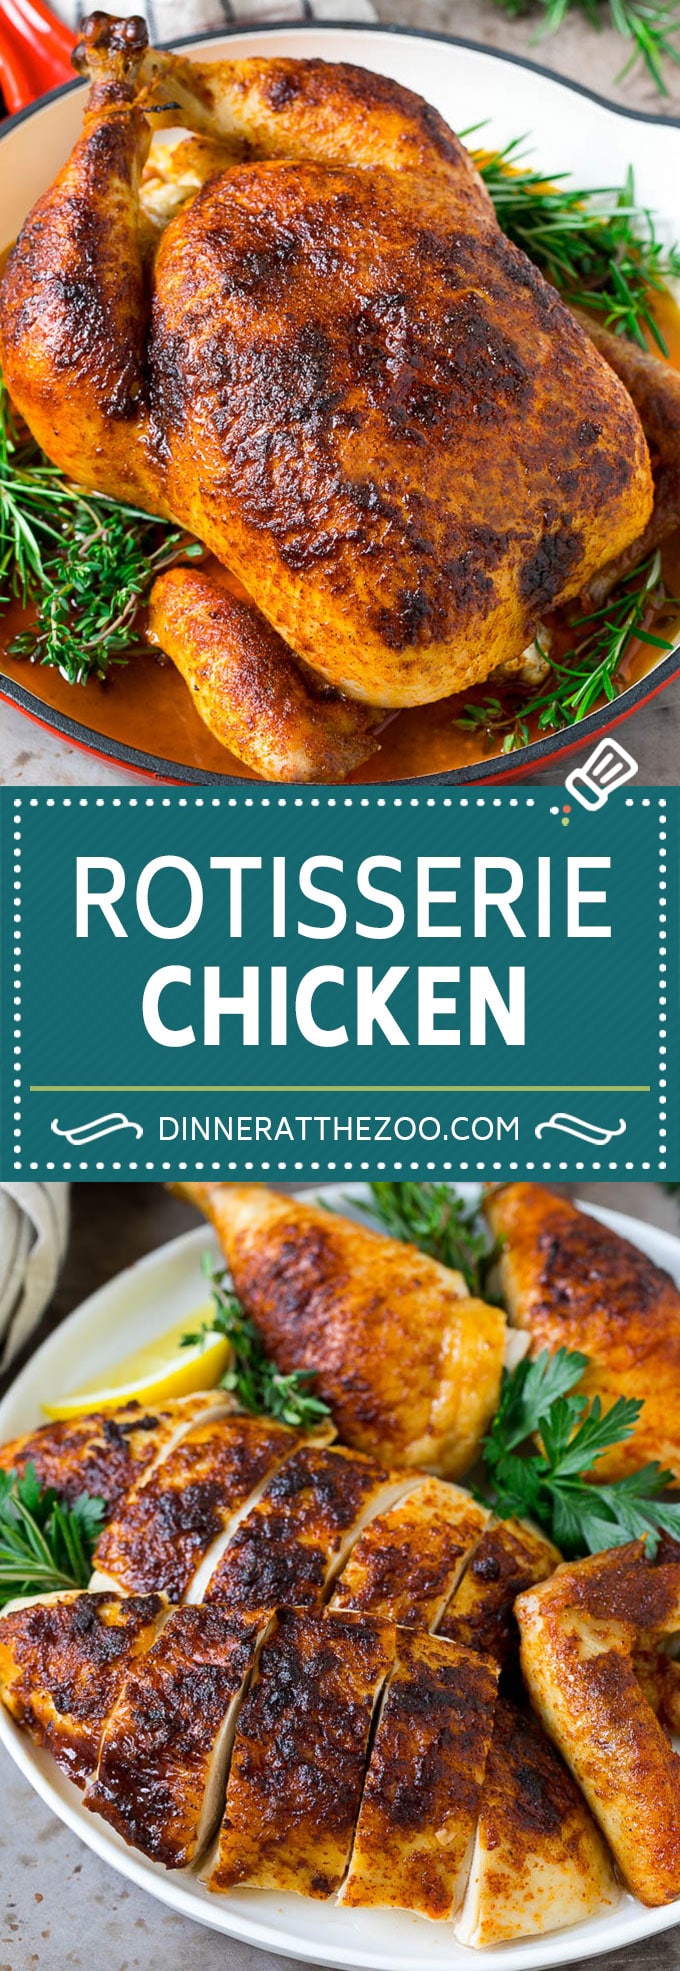 Rotisserie Chicken Recipe | Roasted Chicken #chicken #dinner #dinneratthezoo #comfortfood